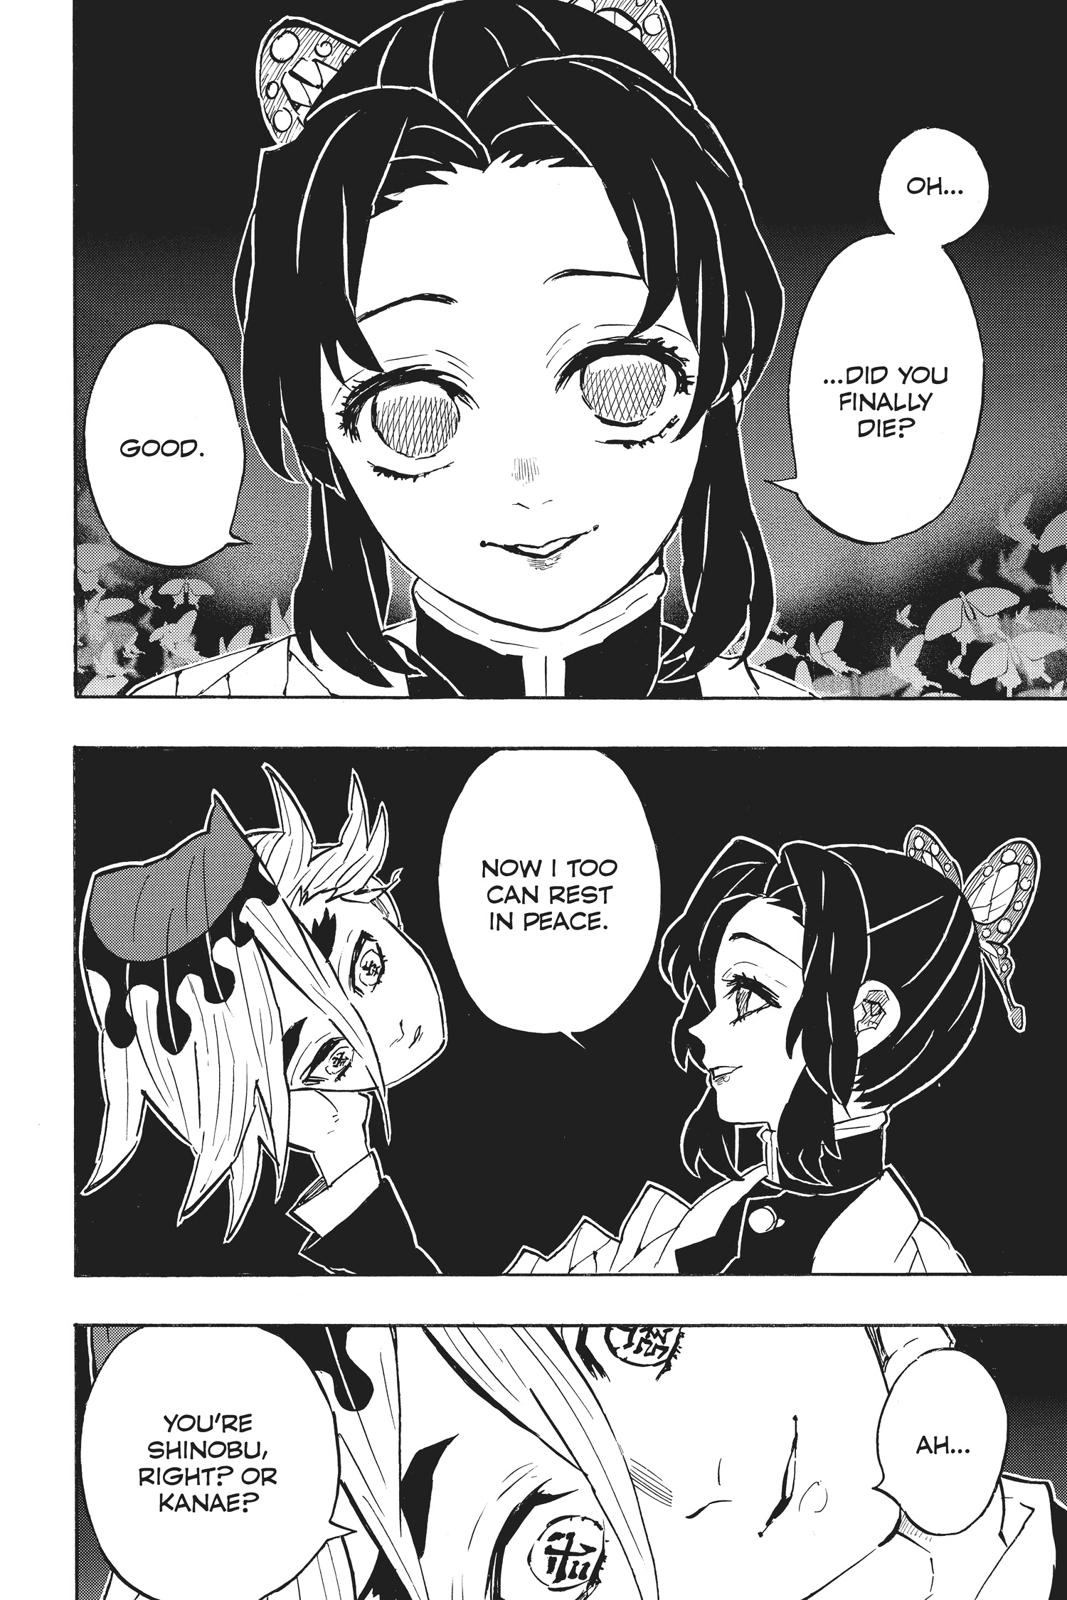 Demon Slayer Manga Manga Chapter - 163 - image 6